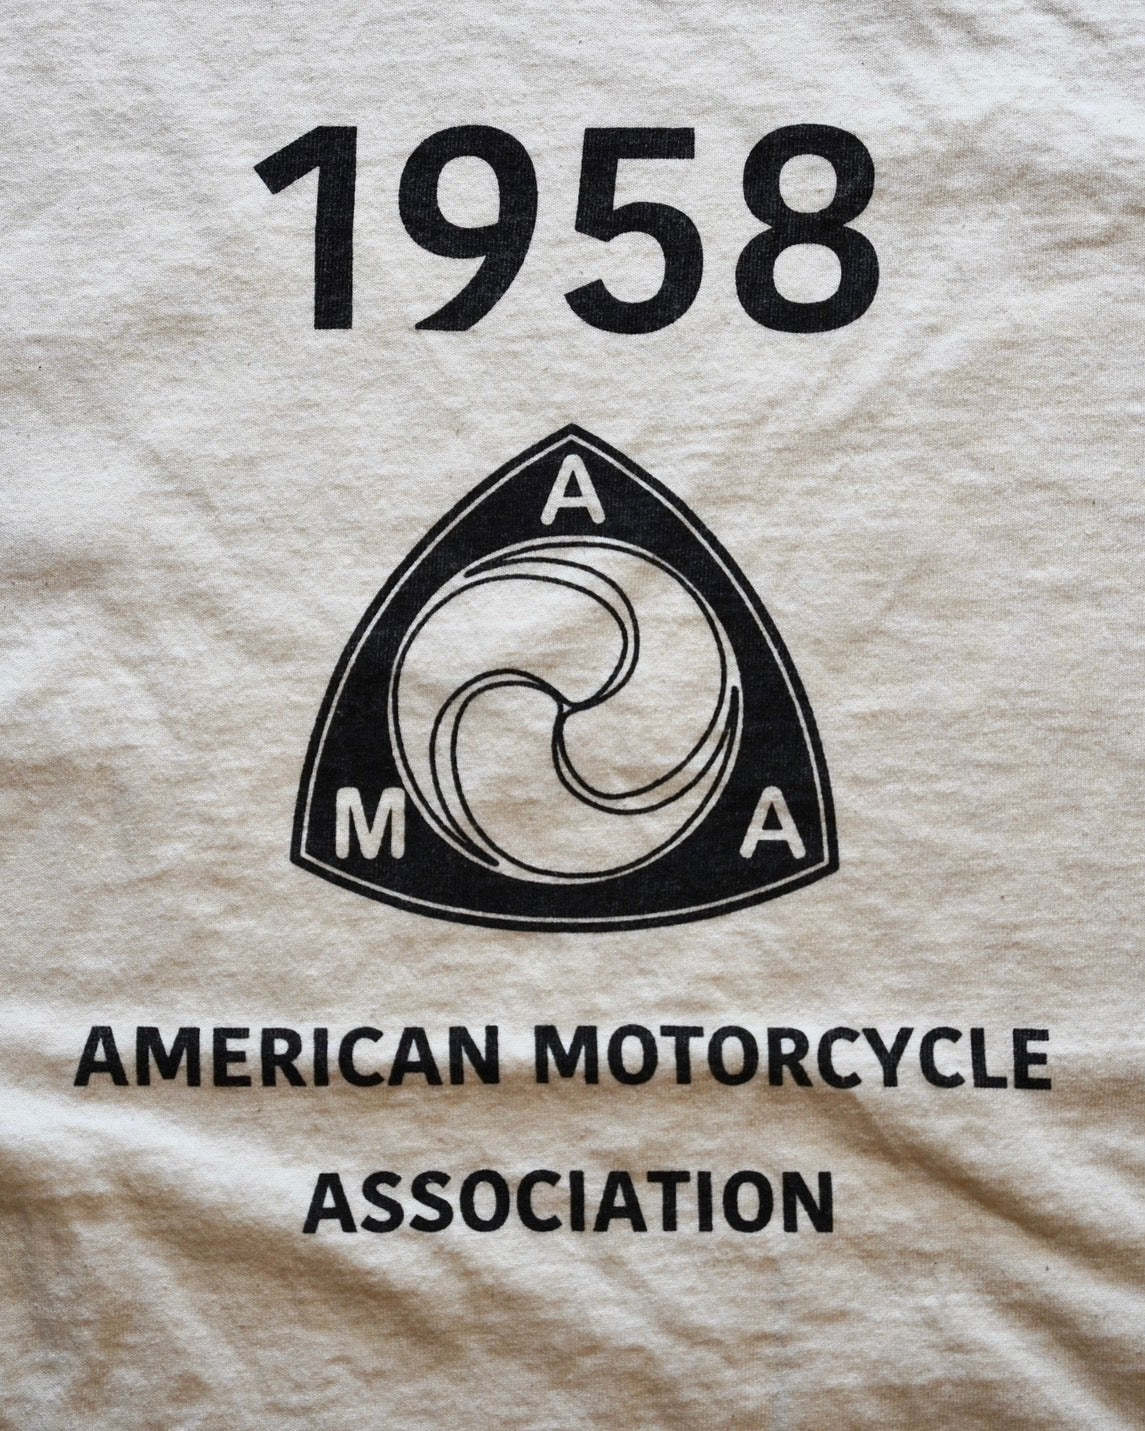 #520 1950s Cotton T-shirt / SP size